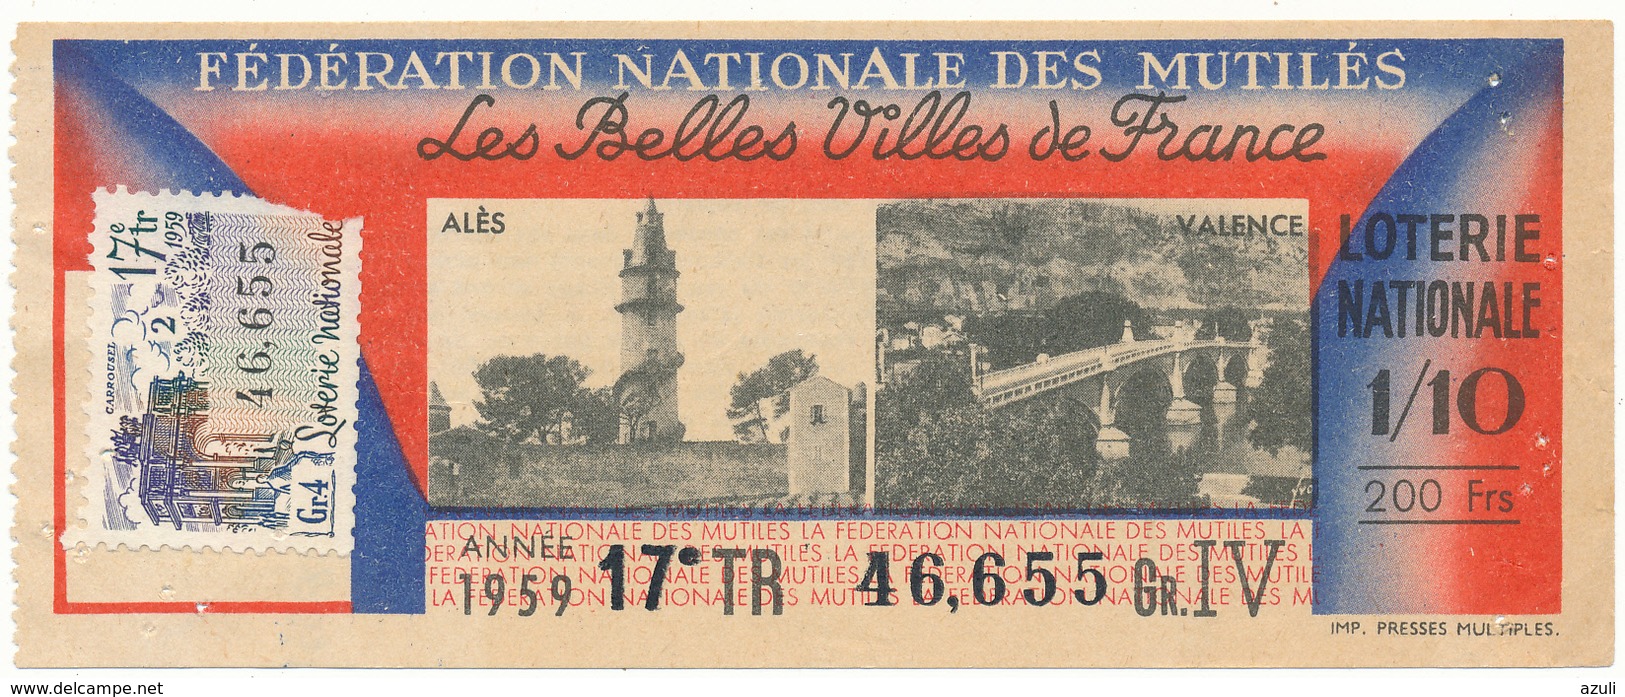 LOTERIE NATIONALE - Mutilés, Belles Villes De France, 1959 - Billetes De Lotería